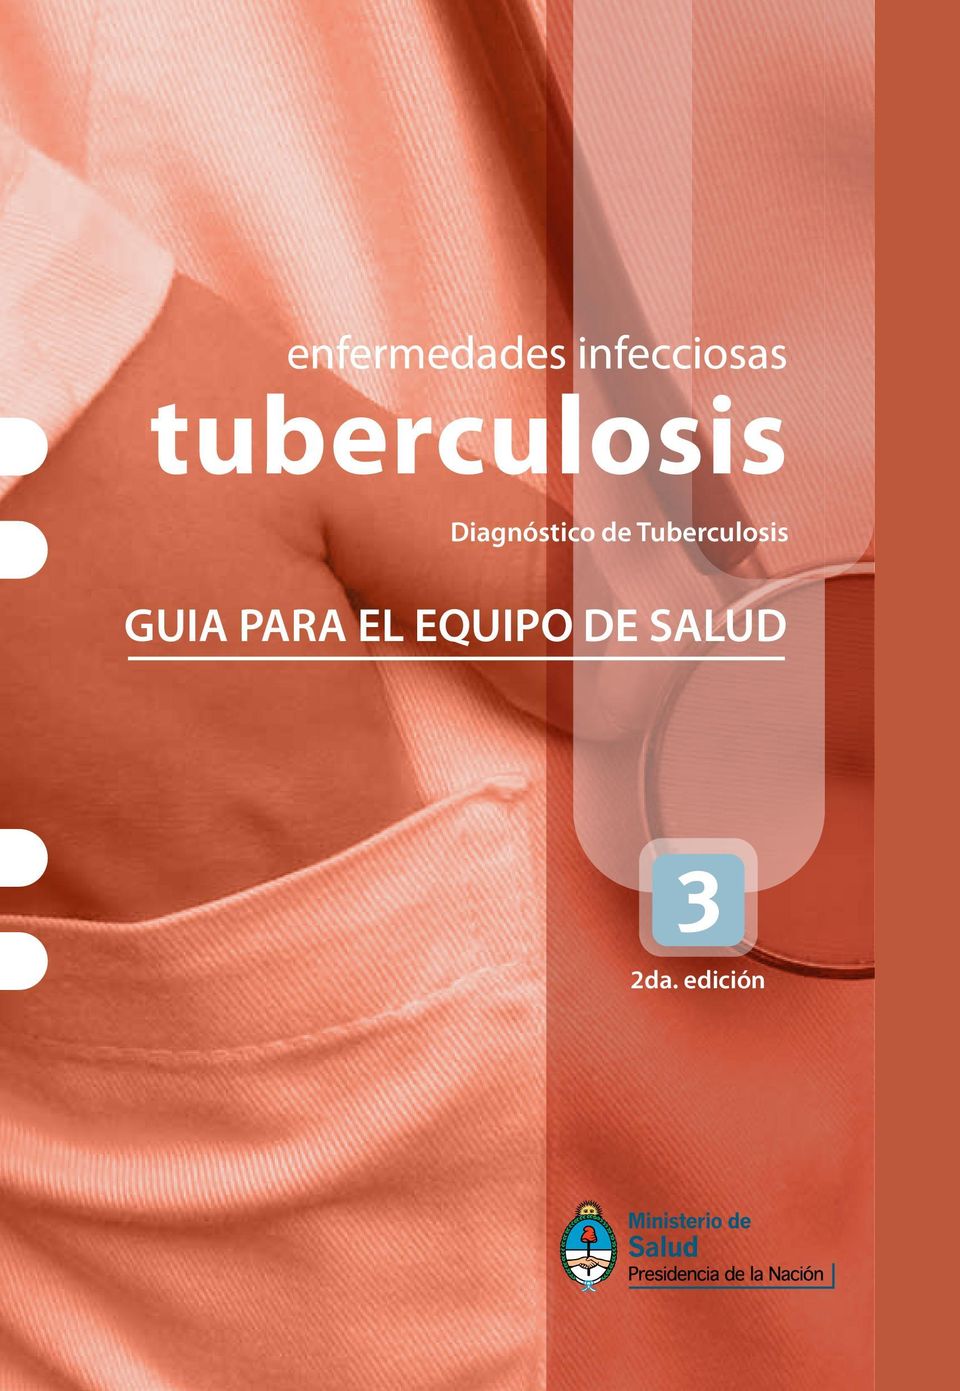 de Tuberculosis GUIA PARA